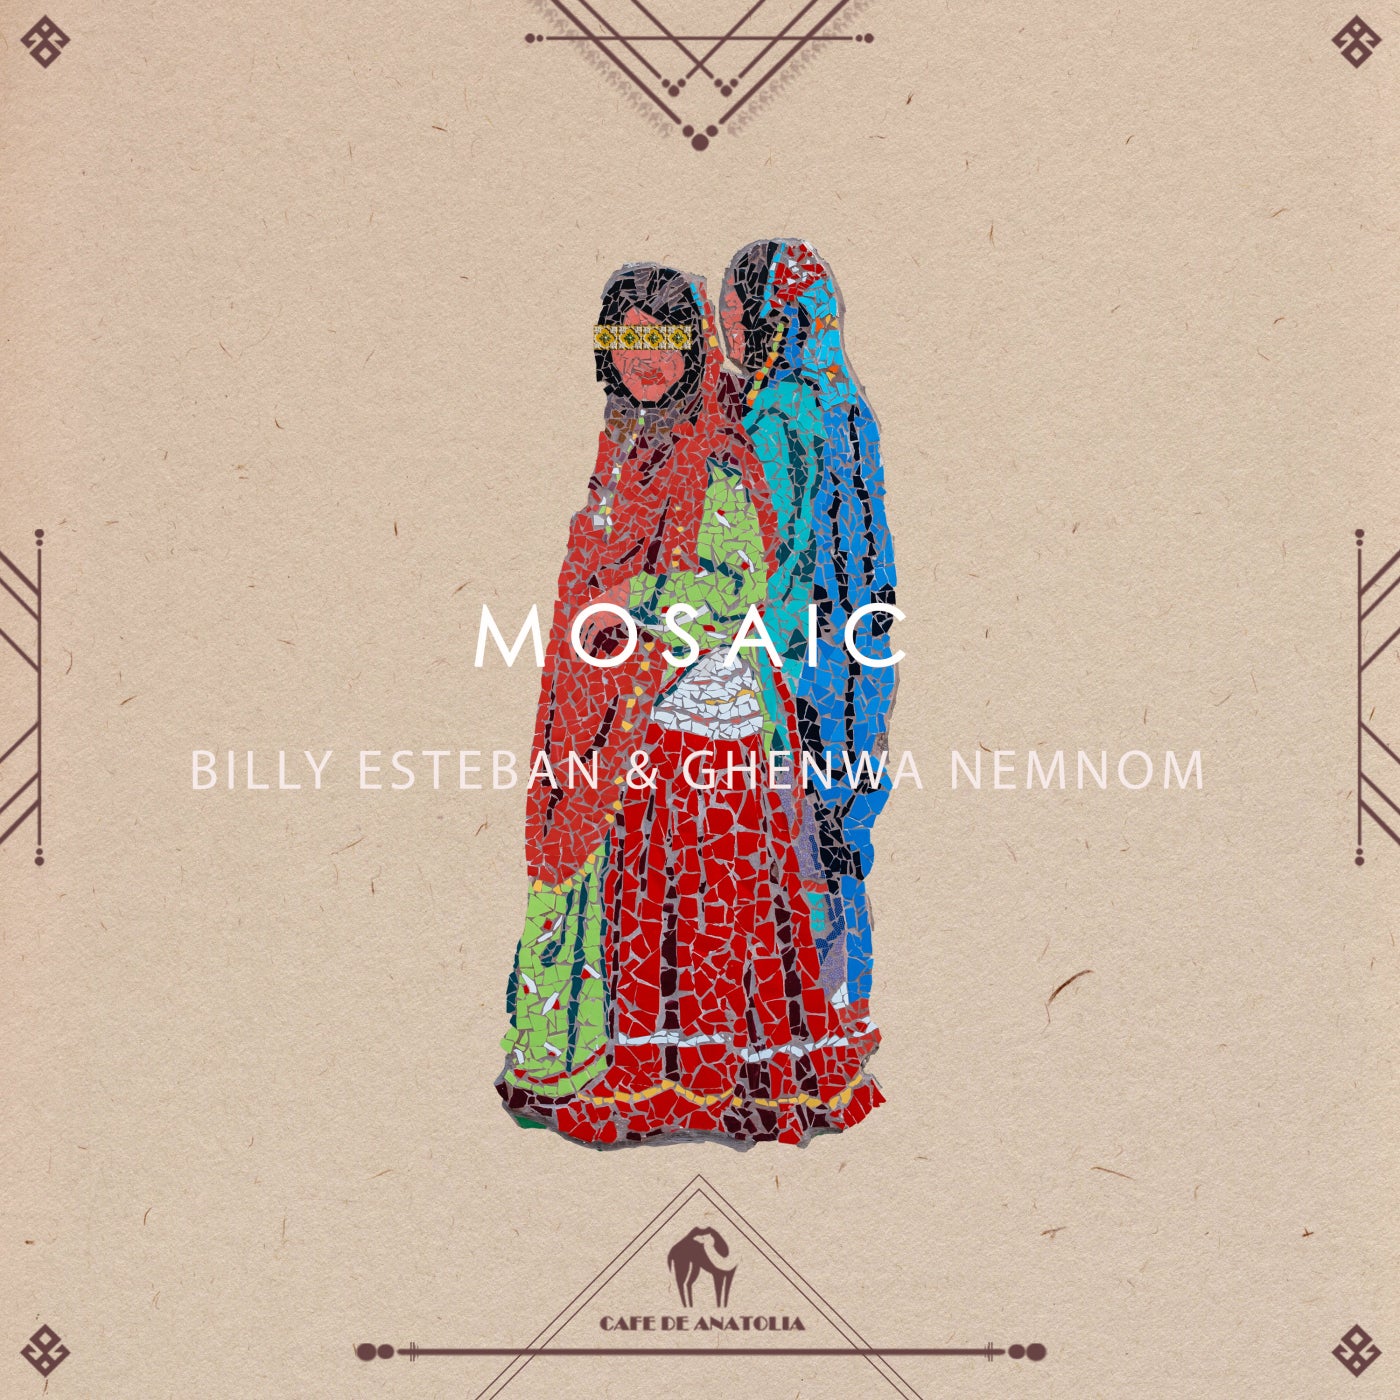 Billy Esteban, Cafe De Anatolia, Ghenwa Nemnom - Mosaic (Dim Angelo & Alex Mihalakis Remix)